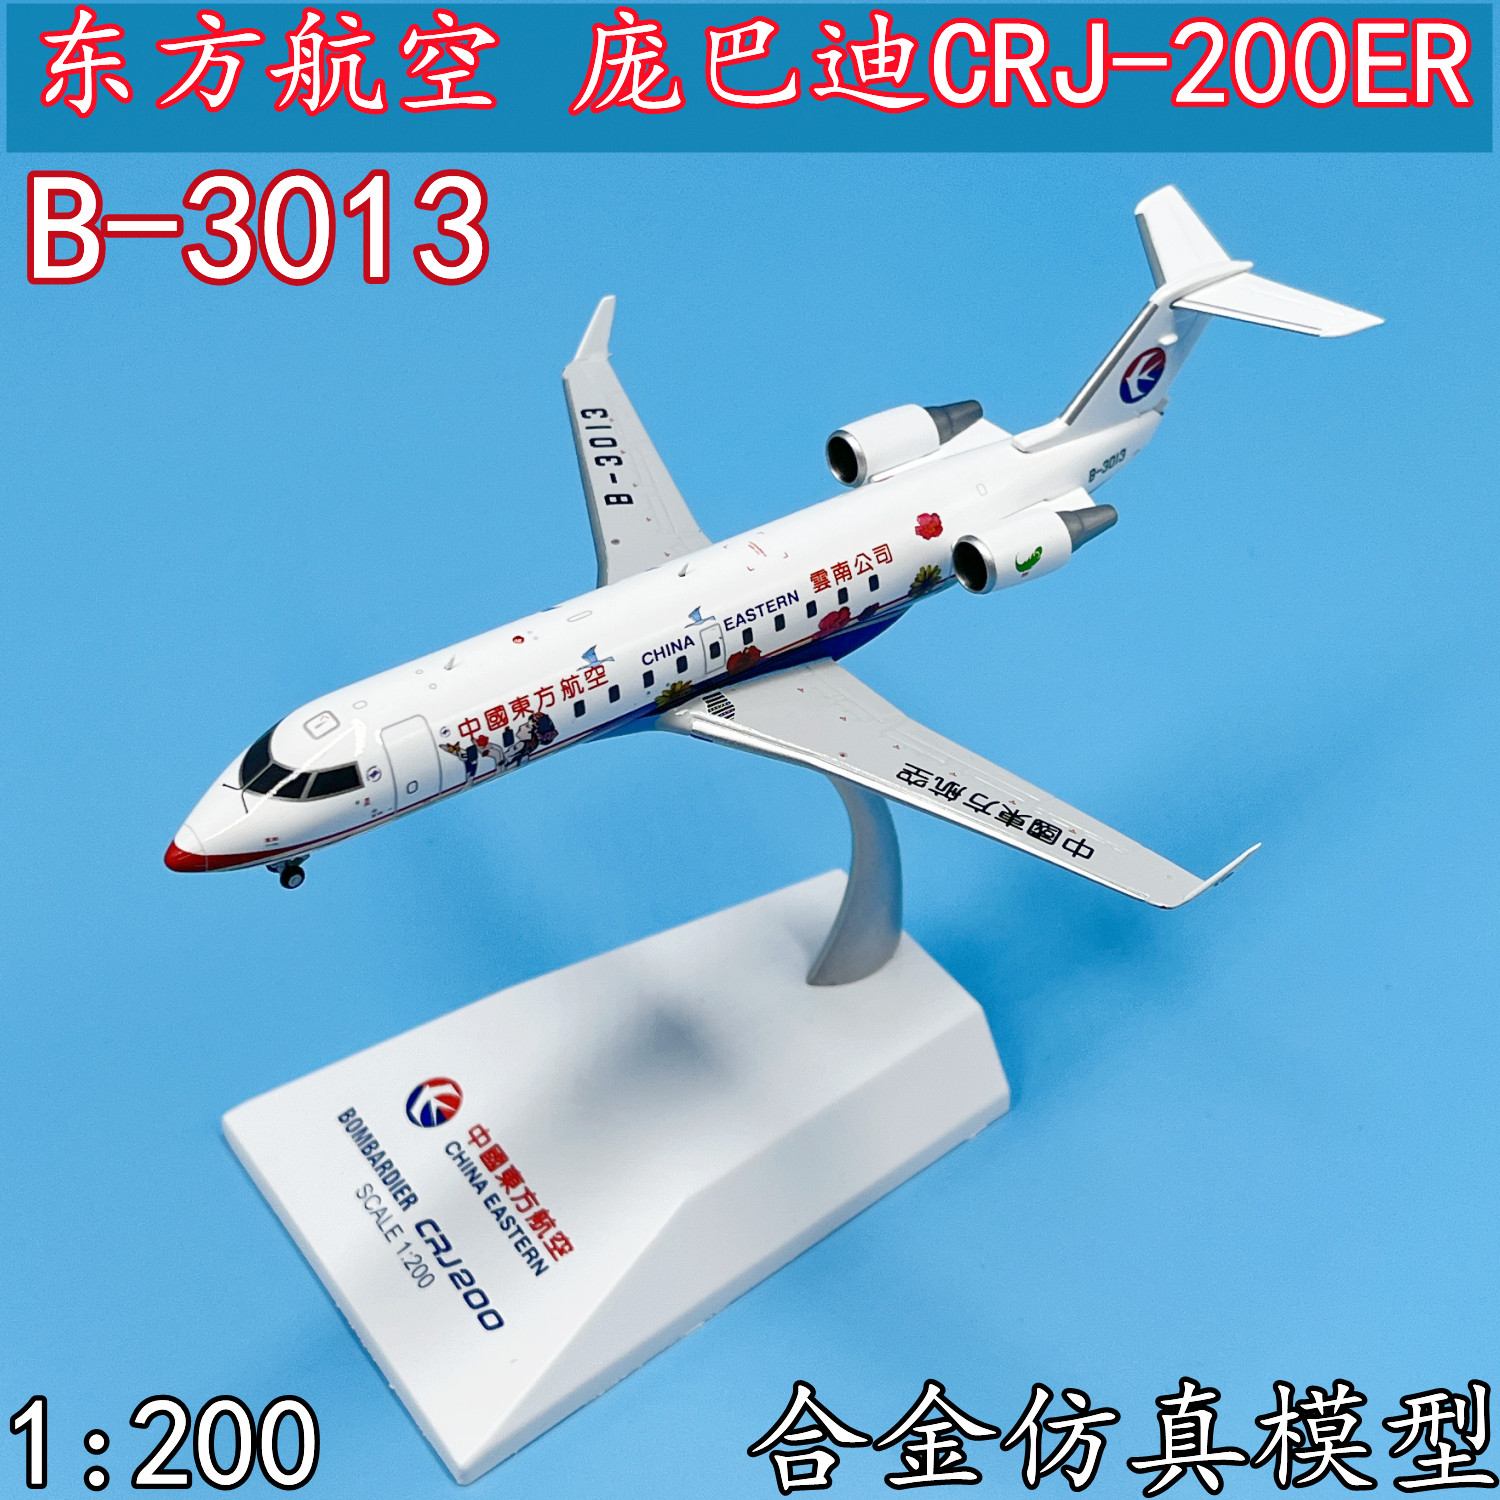 1:200东方航空客机庞巴迪CRJ-200ER飞机模型合金B-3013成品LH2185